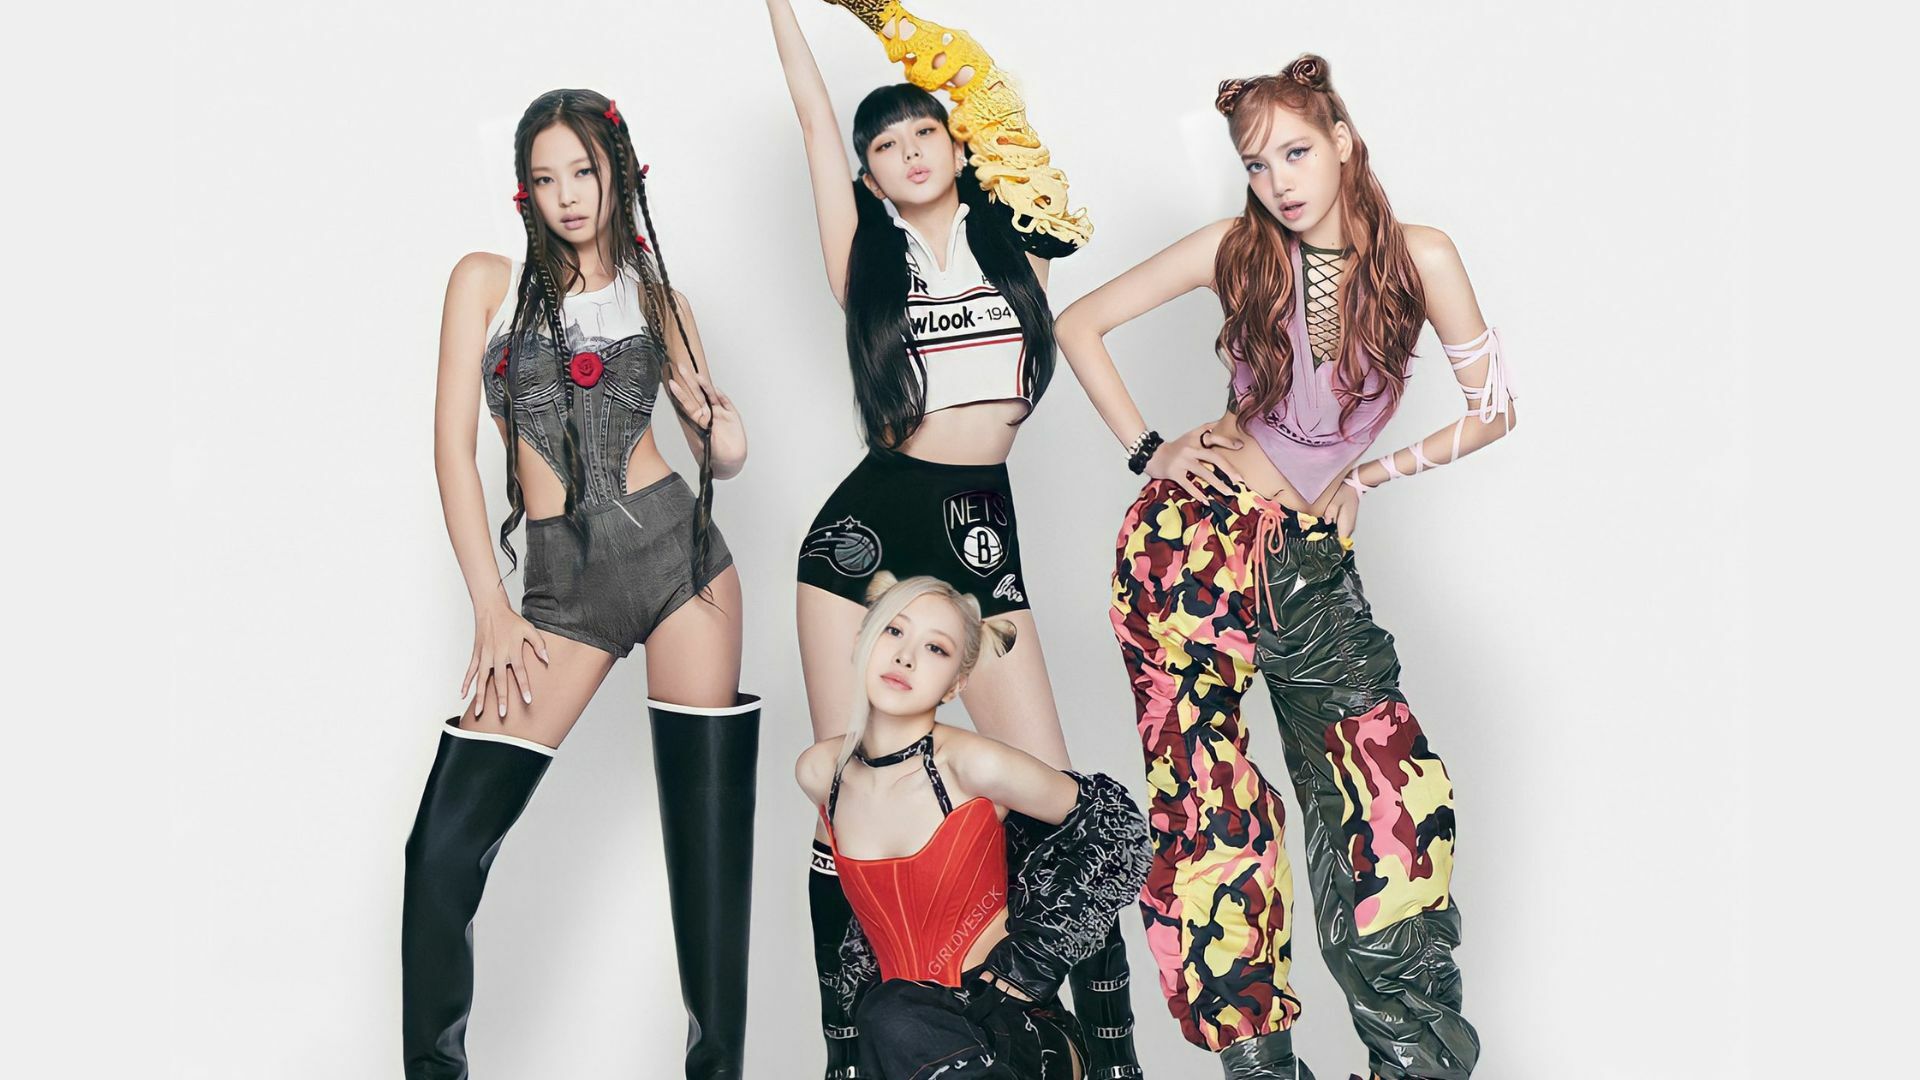 เพลง Pink Venom ถูกตัดออกจากรายการ Music Bank